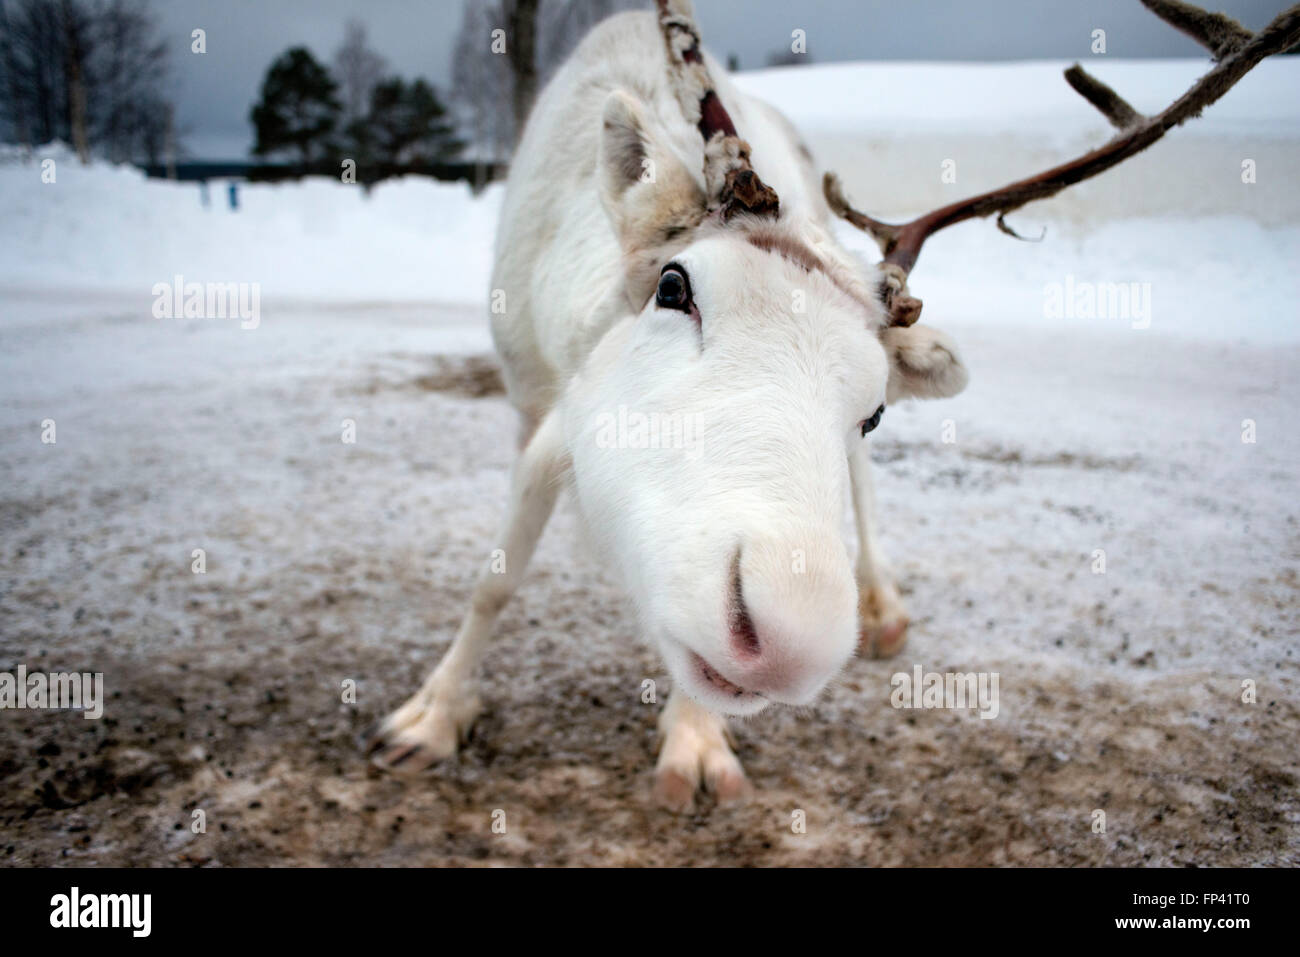 Le renne à Rovaniemi Laponie Finlande. Le renne est une icône de la Laponie finlandaise, et il y a une bonne raison à cela : le nombre Banque D'Images